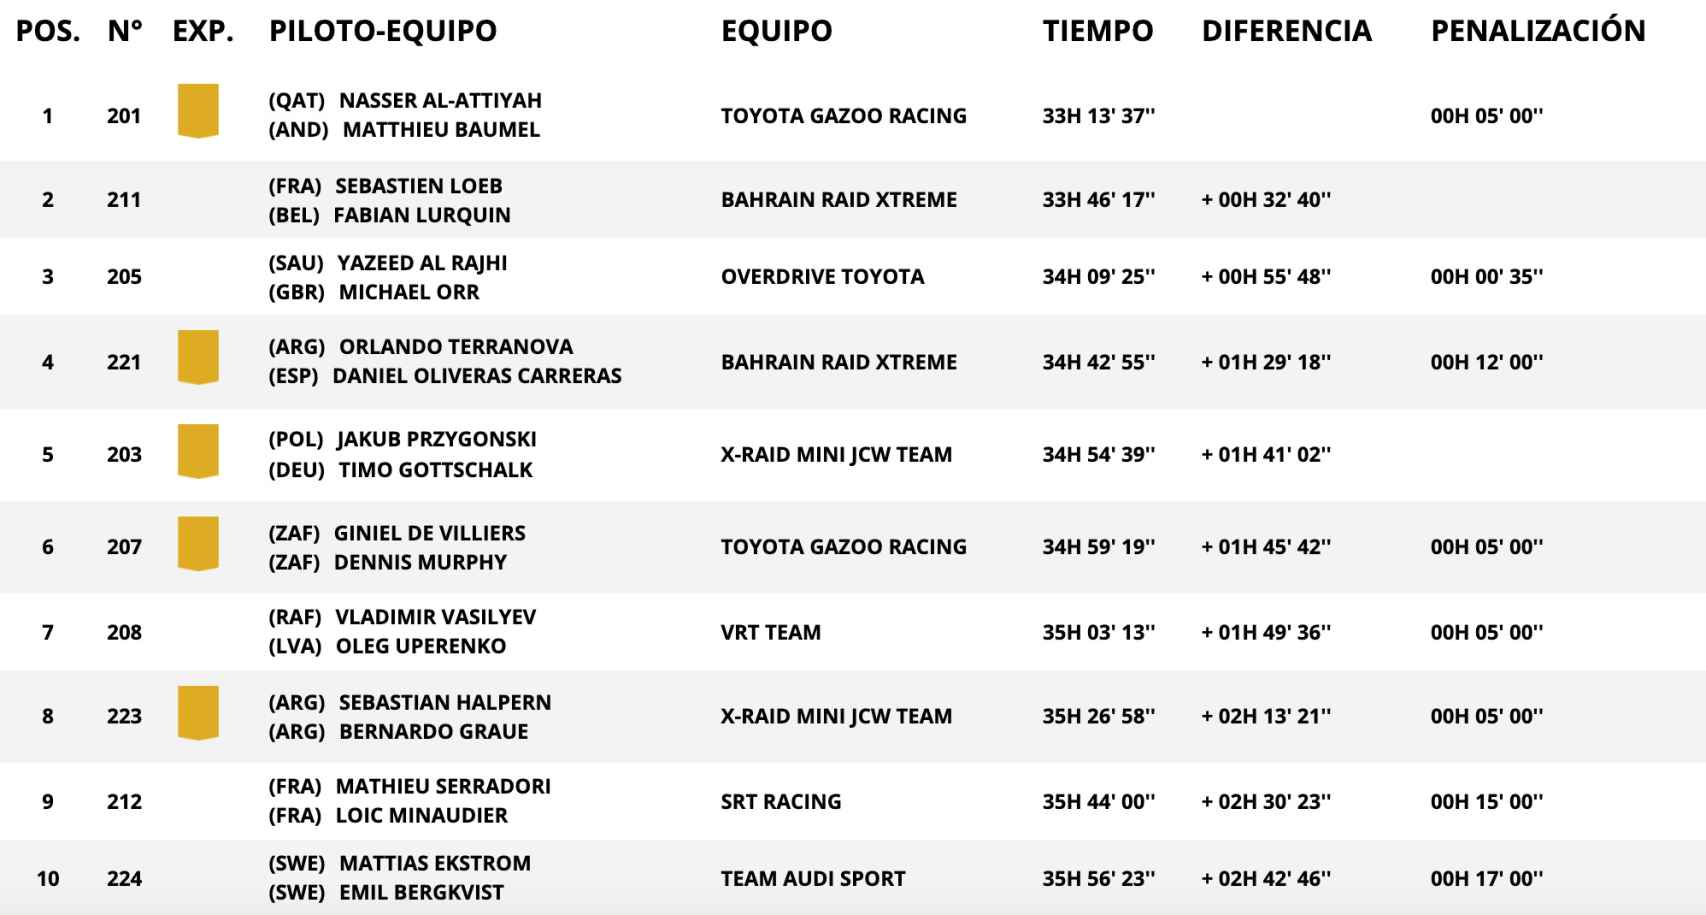 Clasificación general del Rally Dakar tras la 10ª etapa